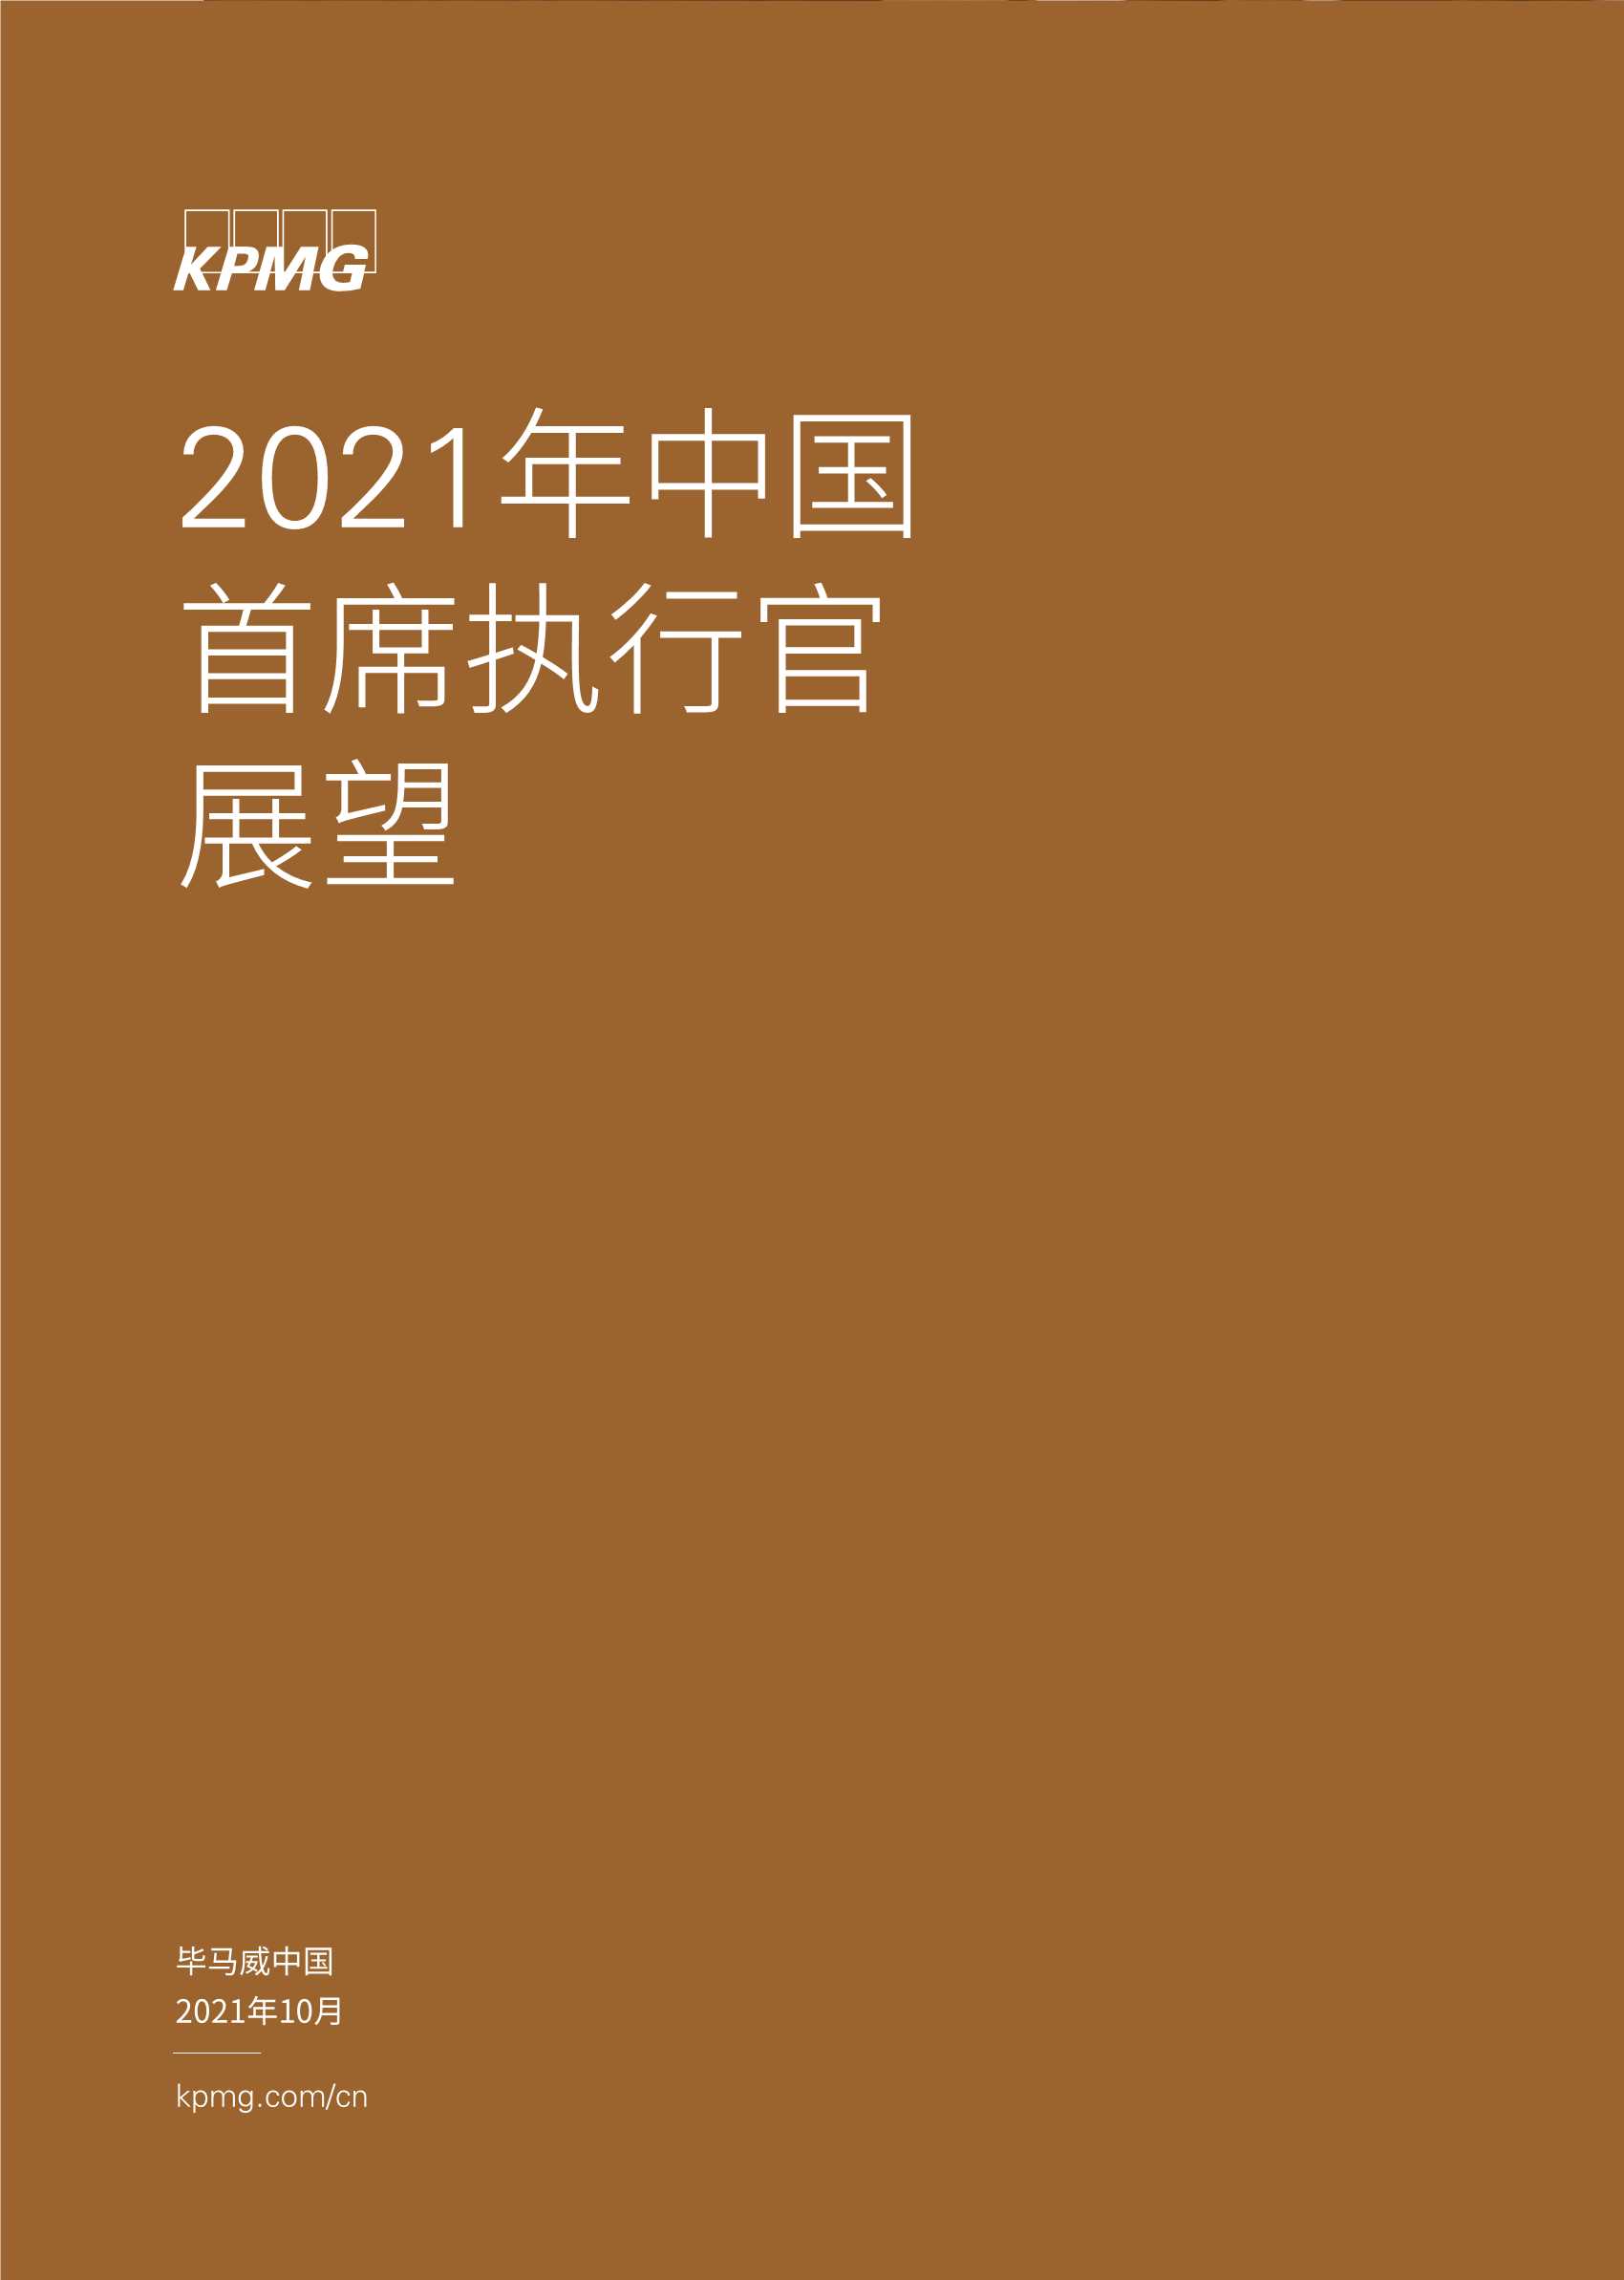 毕马威-2021年中国首席执行官展望-2021.10-28页